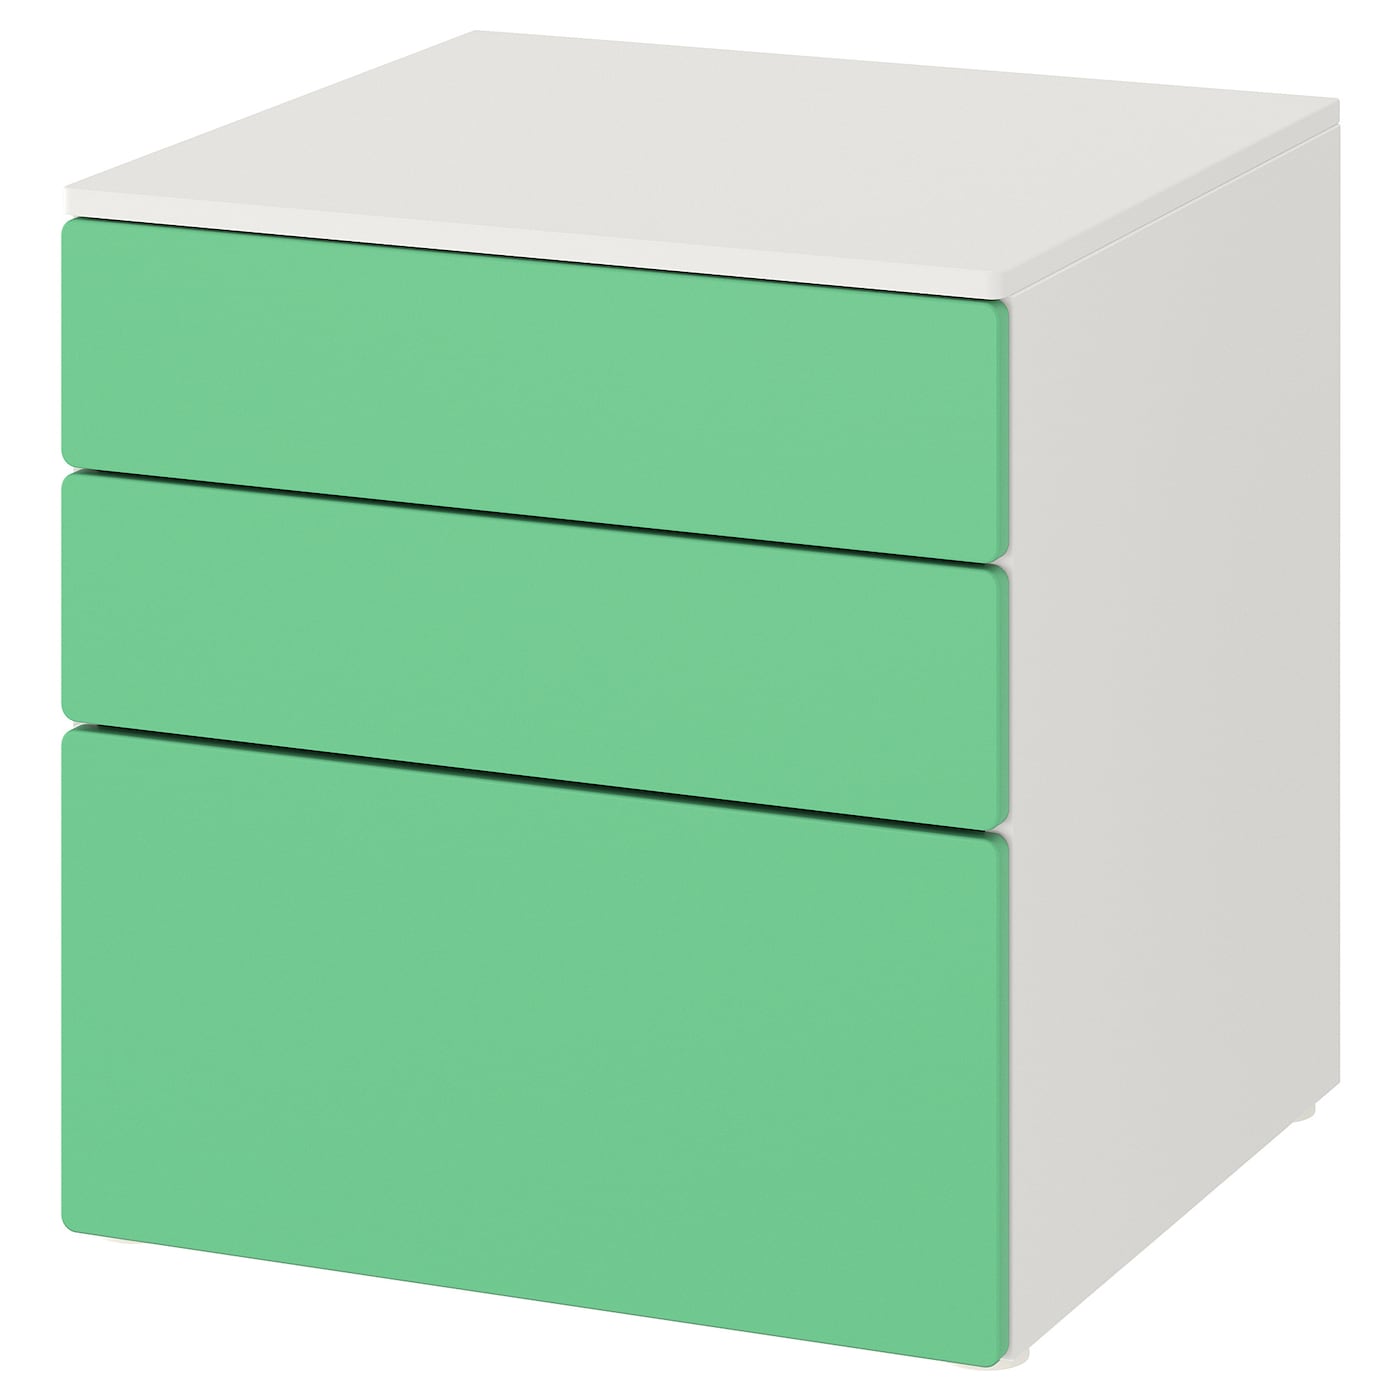 SMÅSTAD / PLATSA Kommode mit 3 Schubladen  -  - Möbel Ideen für dein Zuhause von Home Trends. Möbel Trends von Social Media Influencer für dein Skandi Zuhause.